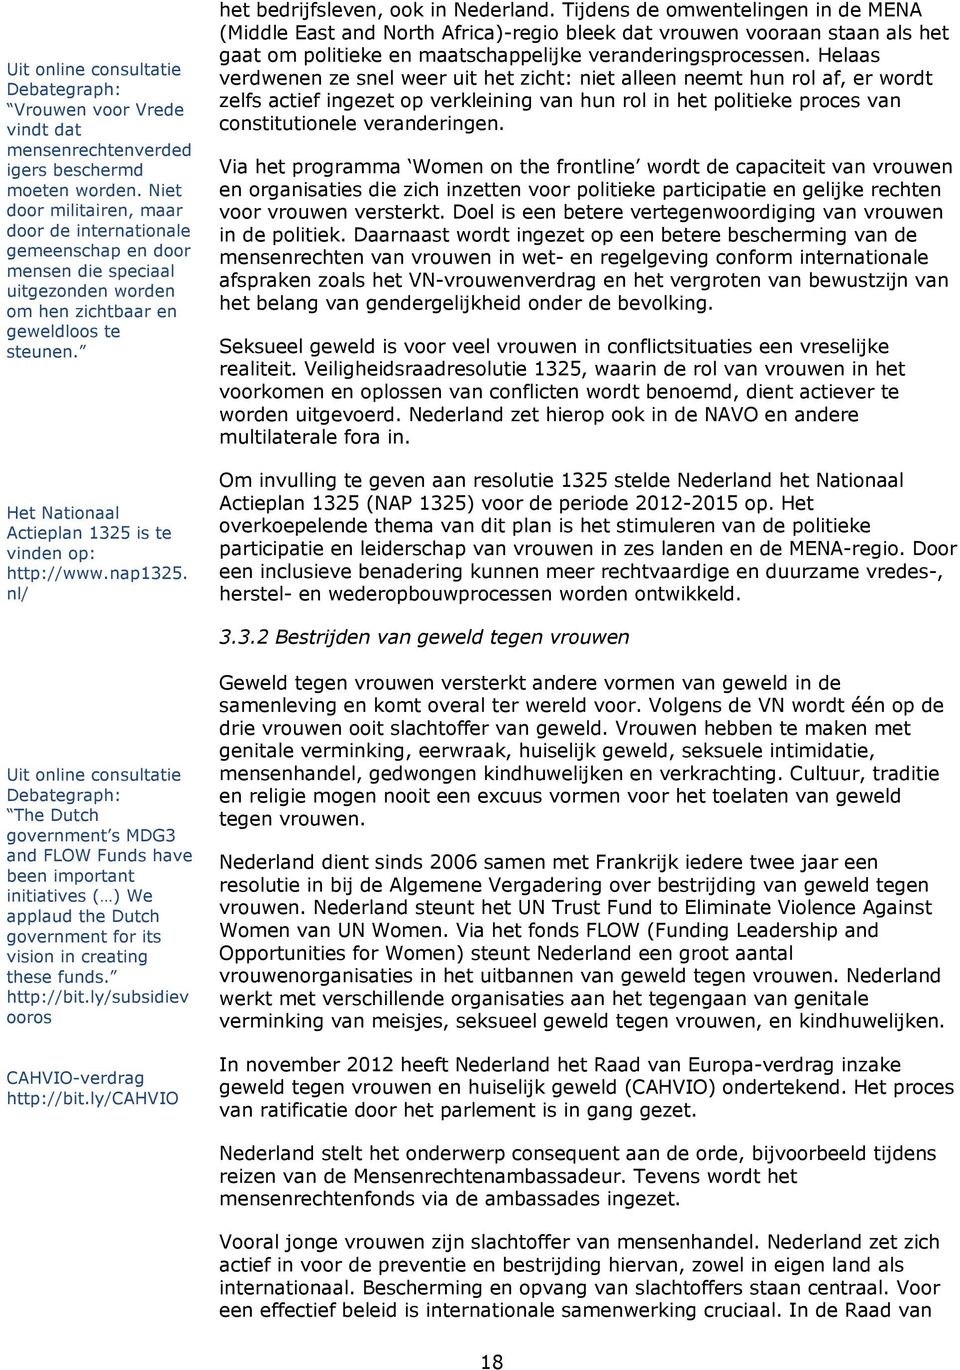 Het Nationaal Actieplan 1325 is te vinden op: http://www.nap1325. nl/ het bedrijfsleven, ook in Nederland.